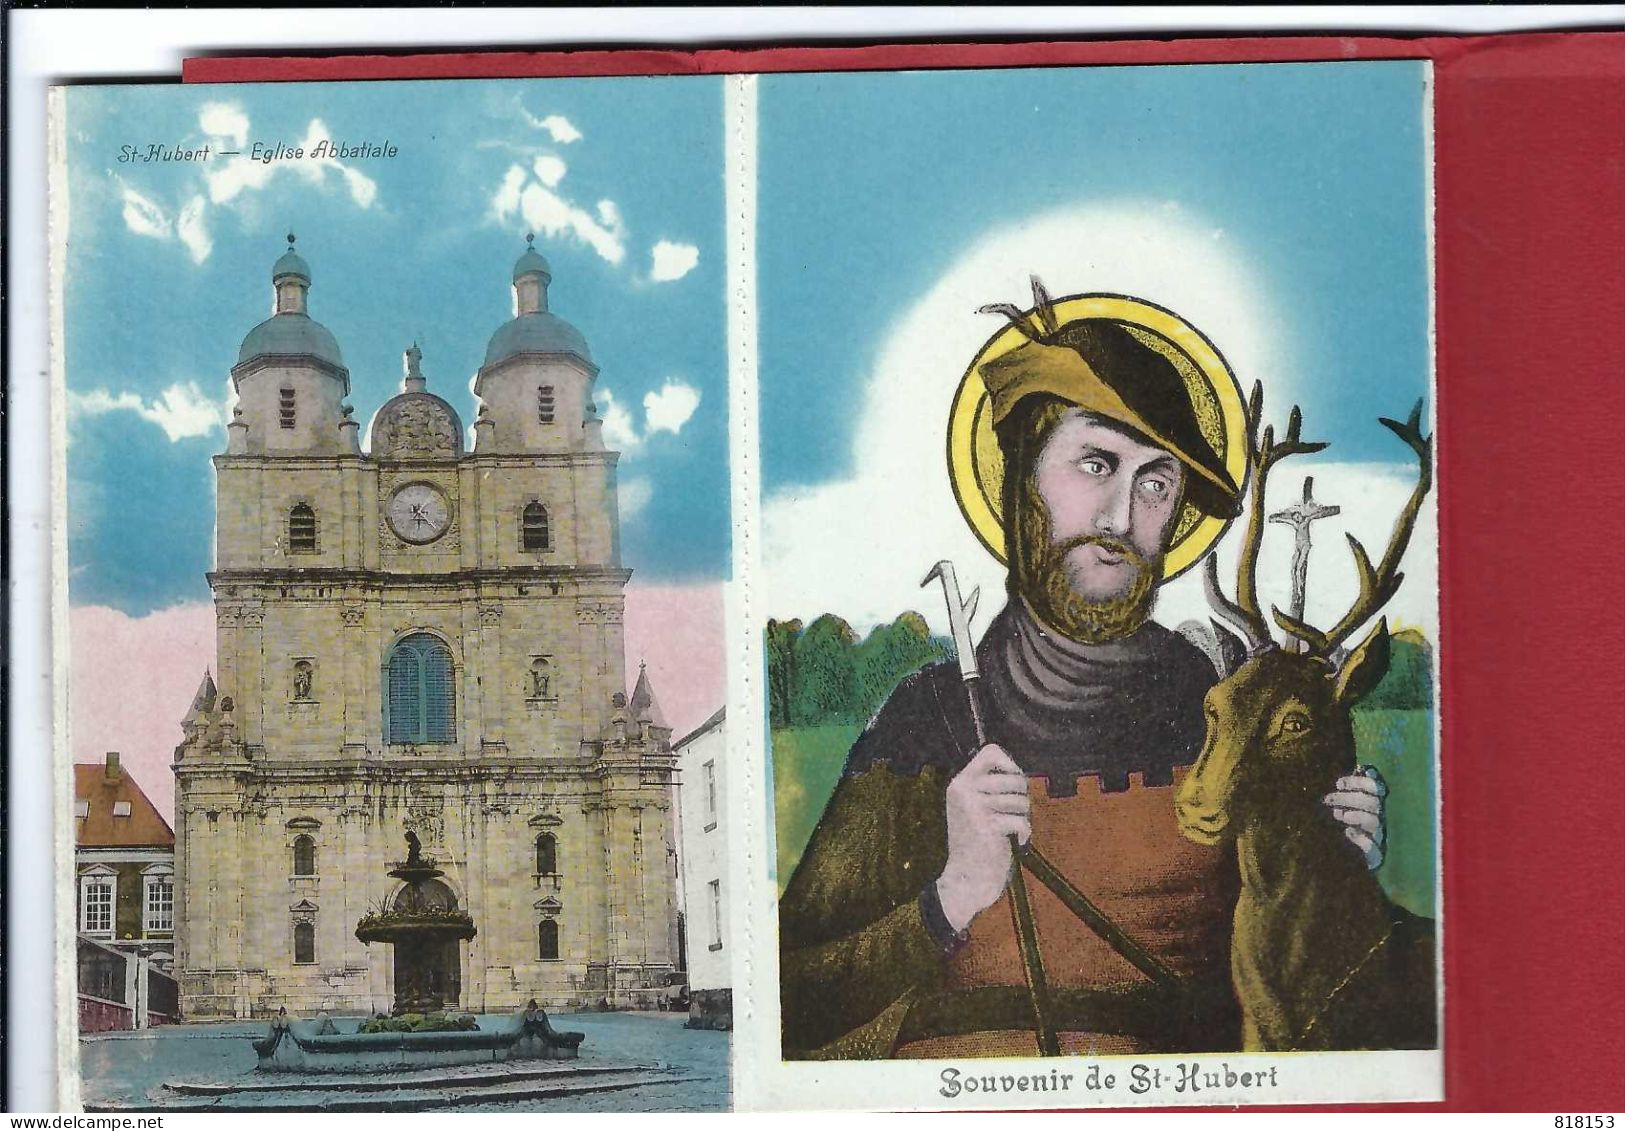 St-Hubert     10  CARTES VUES CHOISIES - Saint-Hubert